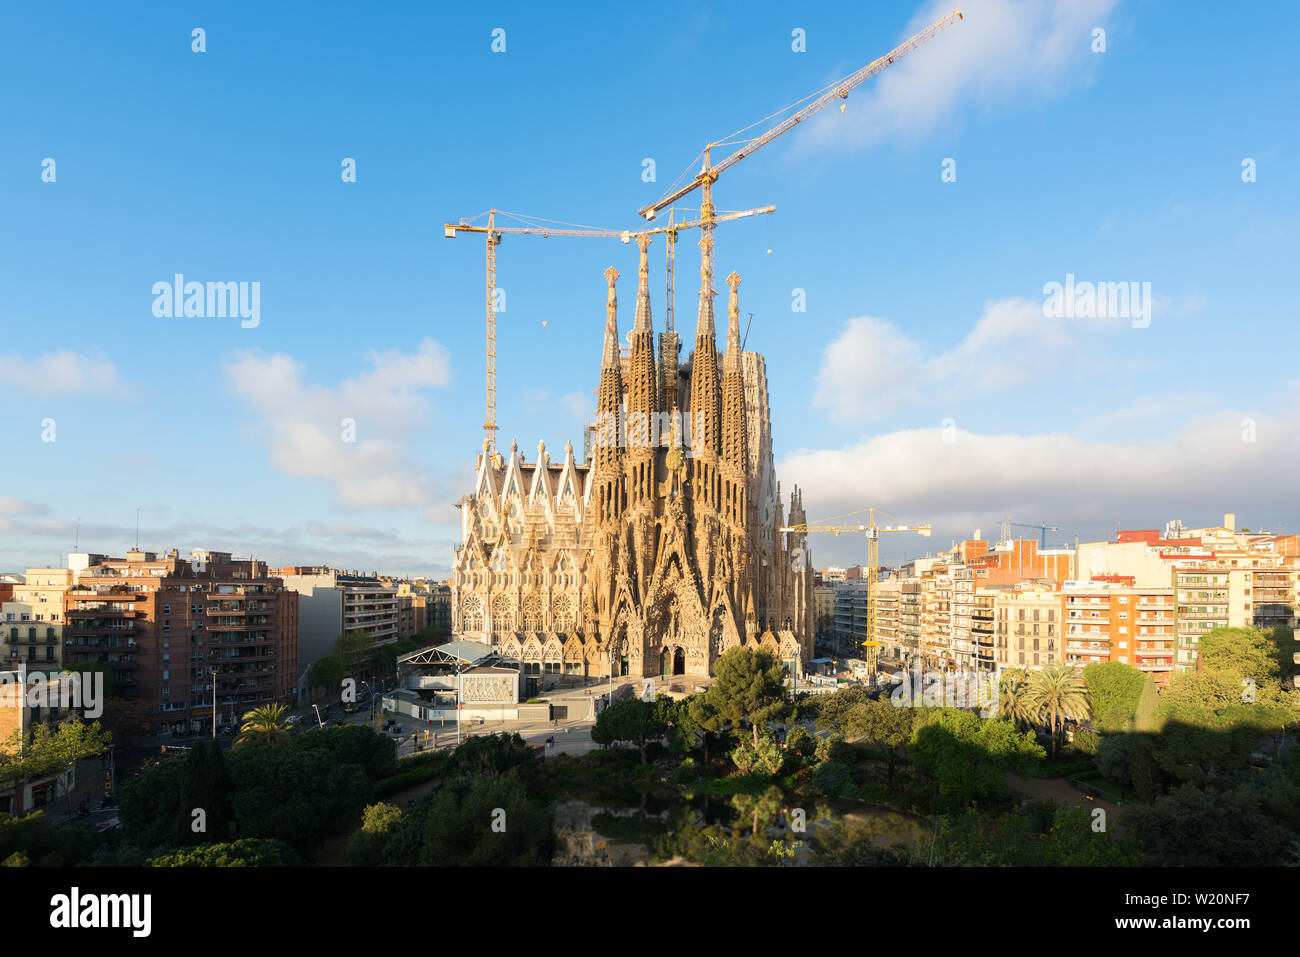 Luftaufnahme der Sagrada Familia, einem großen Römisch-katholische Kirche in Barcelona, Spanien, gestaltet von dem katalanischen Architekten Antoni Gaudi. Stockfoto